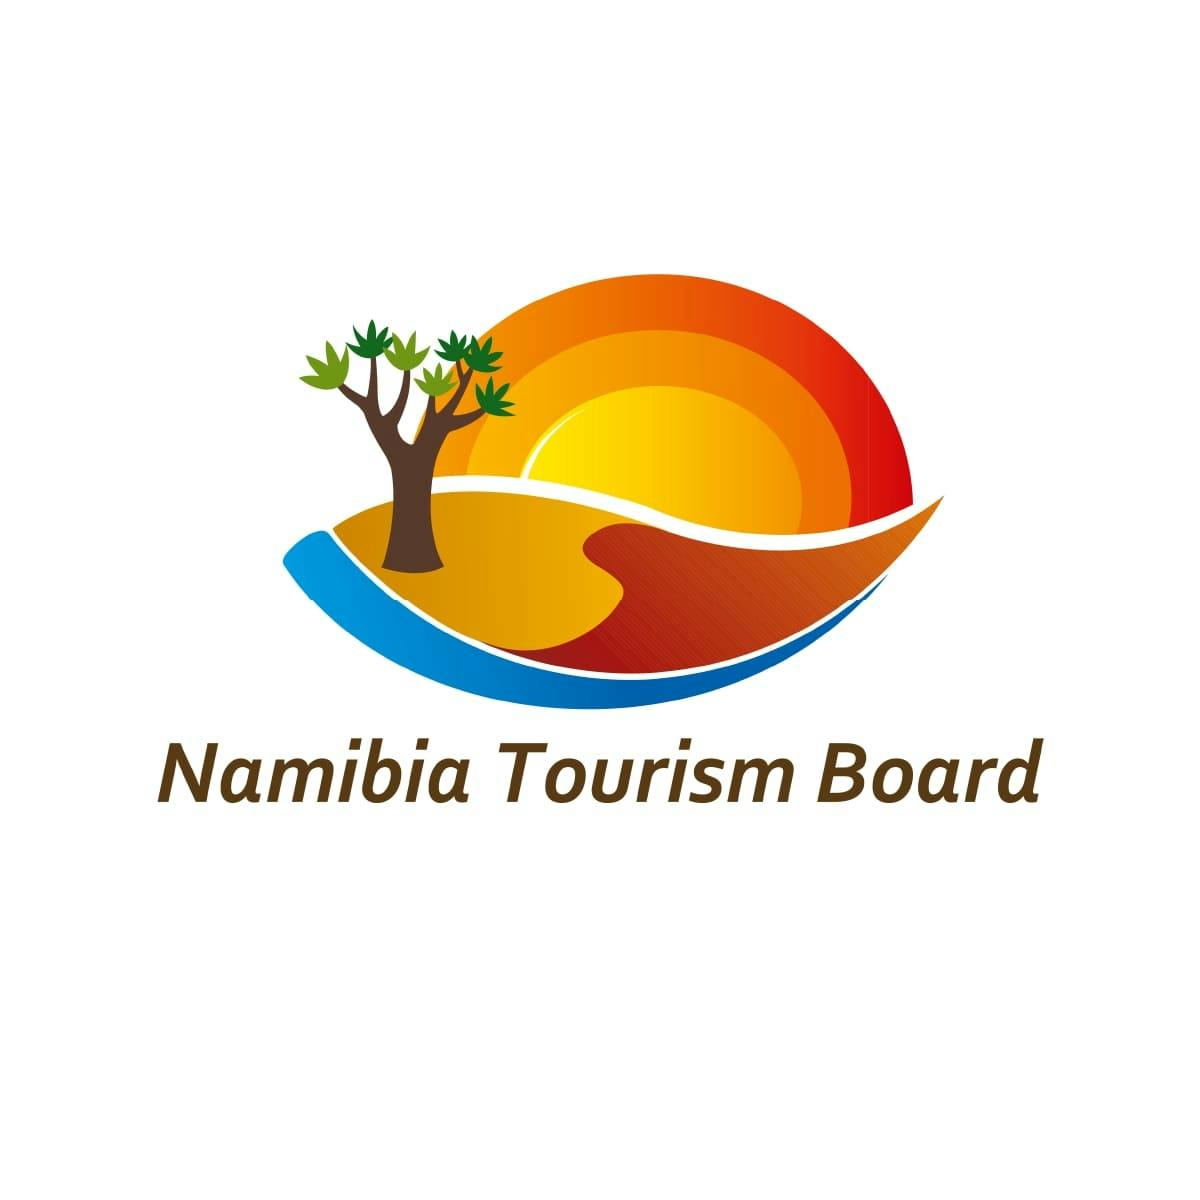 Namibia Tourism Board logo